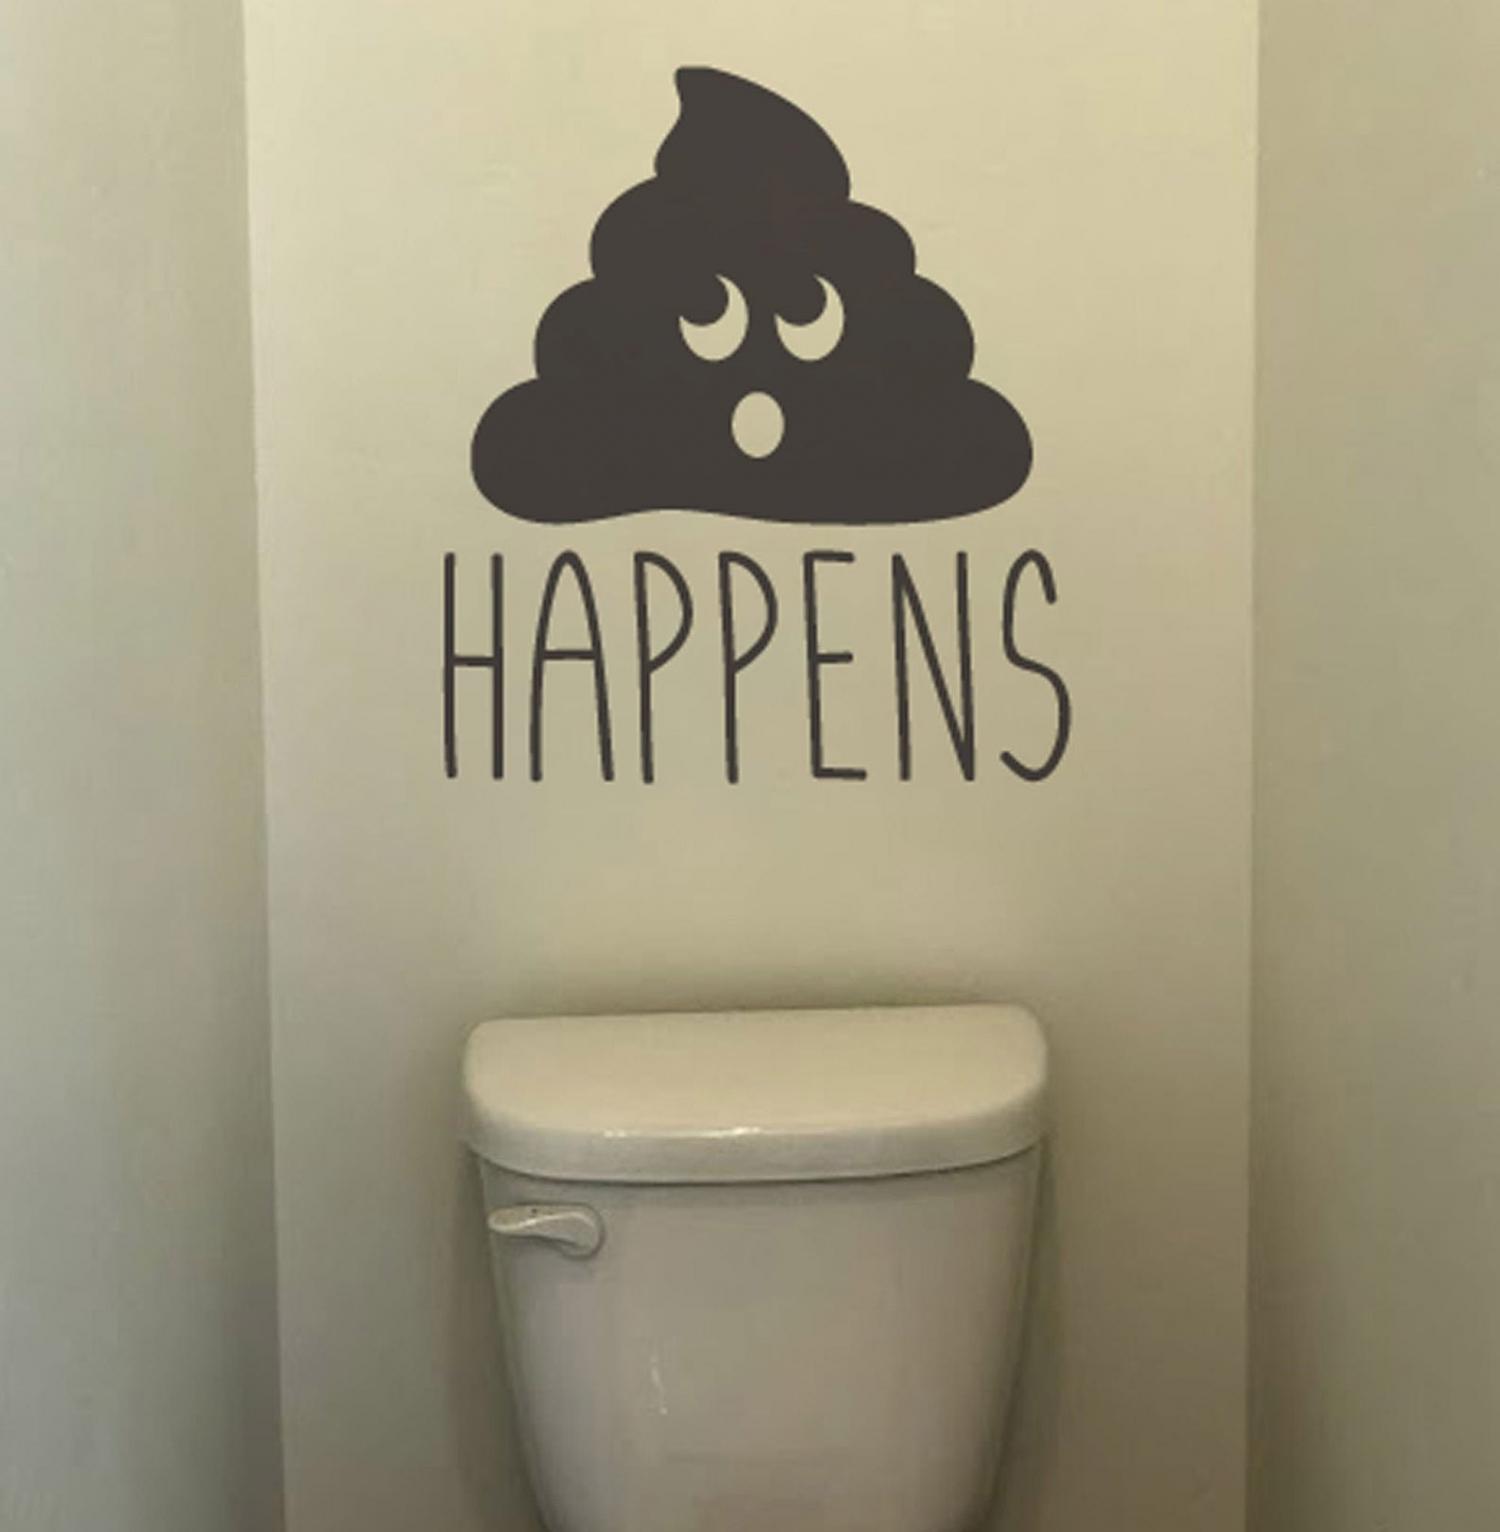 Sh*t Happens - Poop emoji bathroom wall decal - Poop Happens Decal